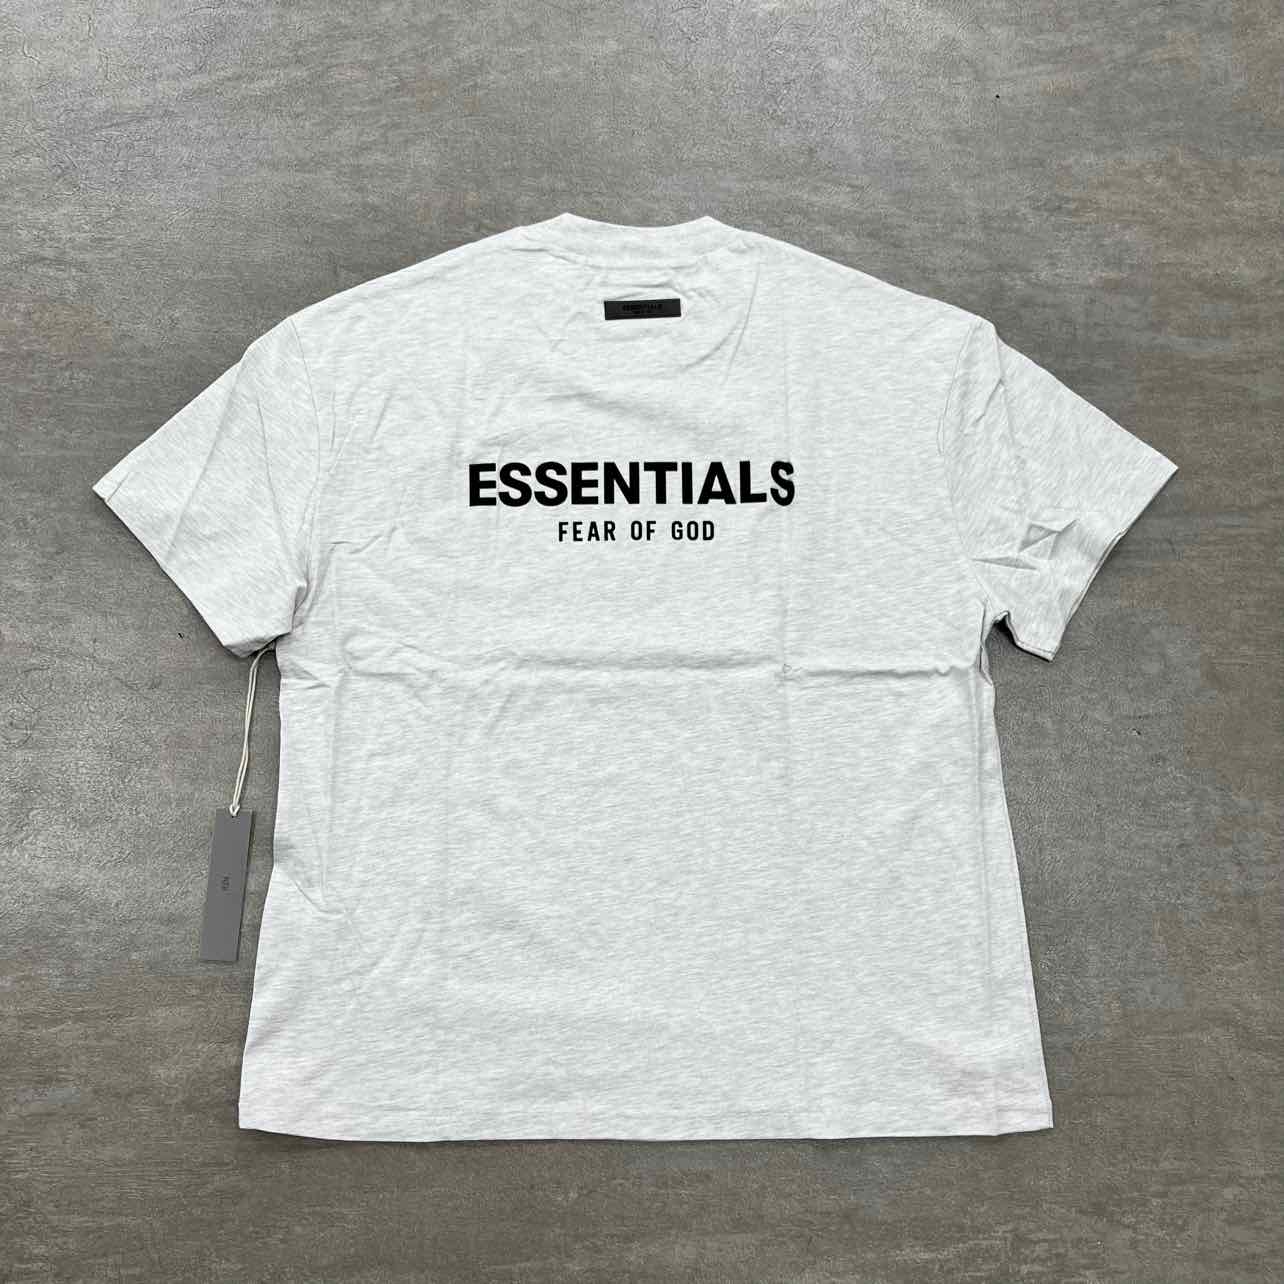 Fear of God T-Shirt "ESSENTIALS" Light Oatmeal New Size XL